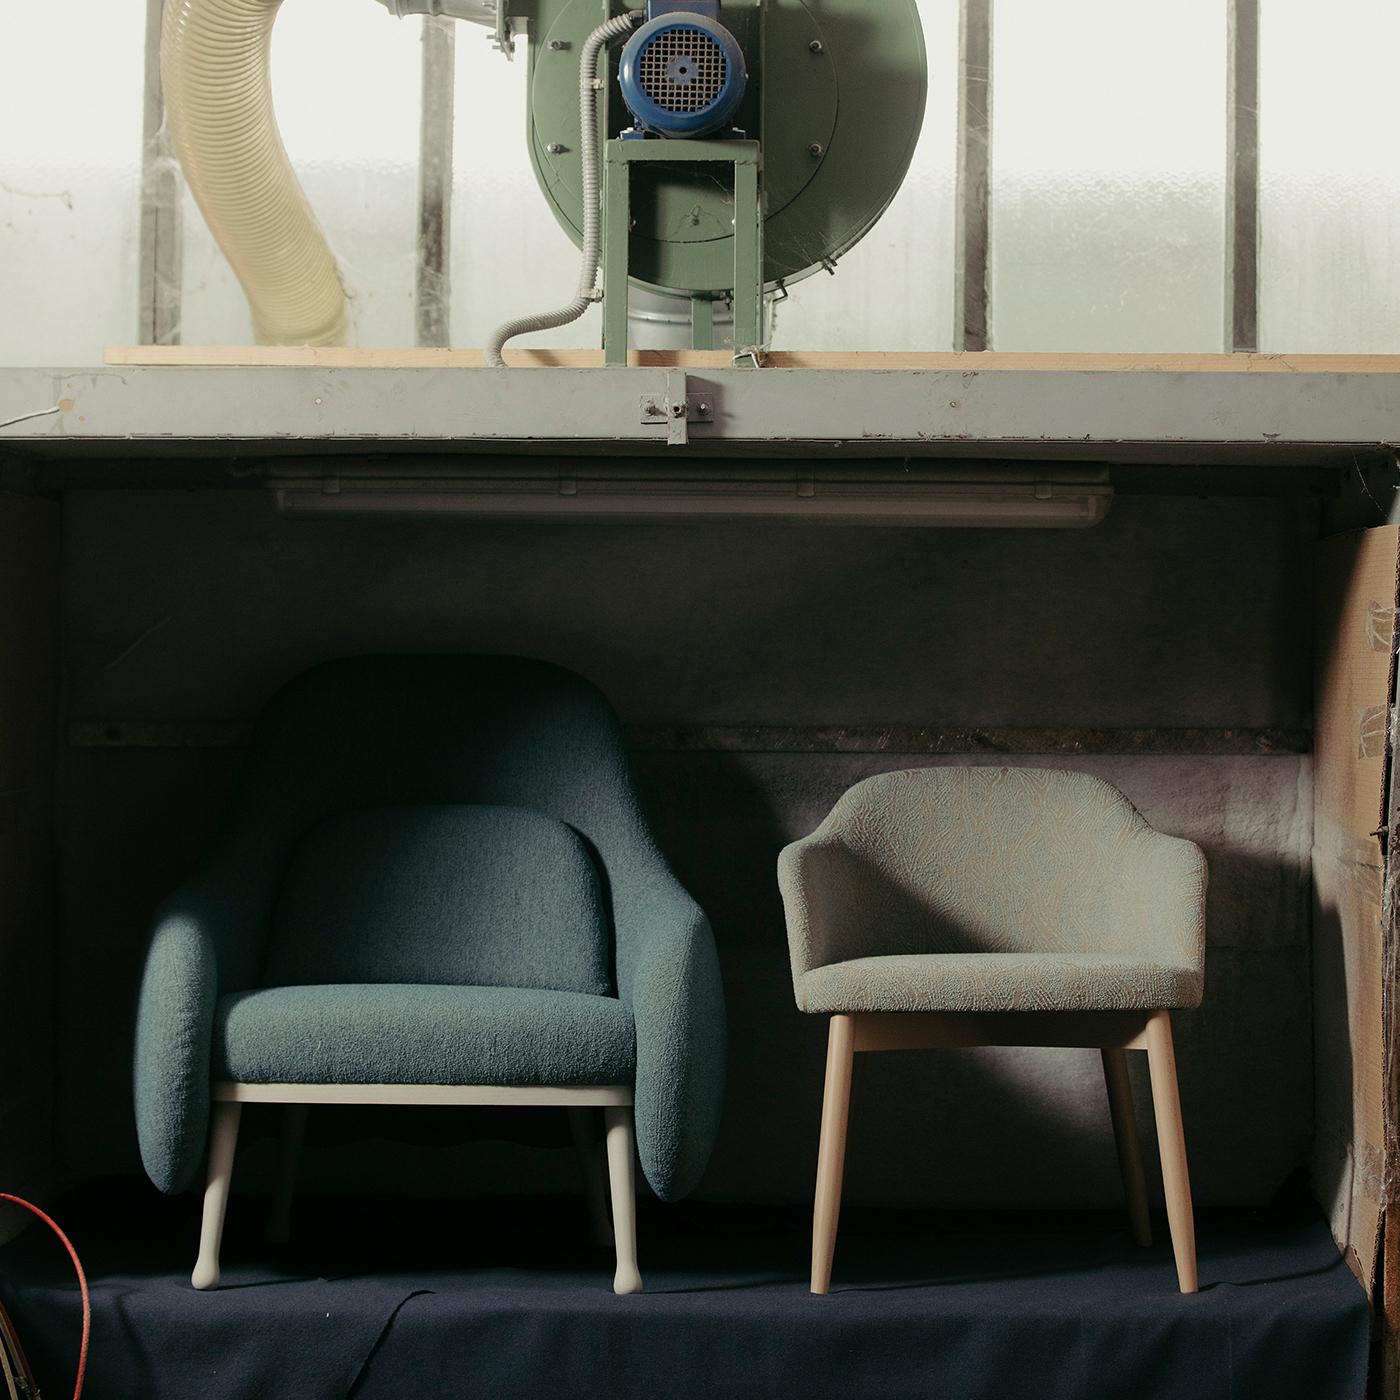 Superbe pour compléter une maison de style scandinave, cet élégant fauteuil de la collection Corolla doit son nom au design enveloppant de son dossier et de ses accoudoirs. La base est marquée par un profil festonné rappelant des pétales de fleurs.